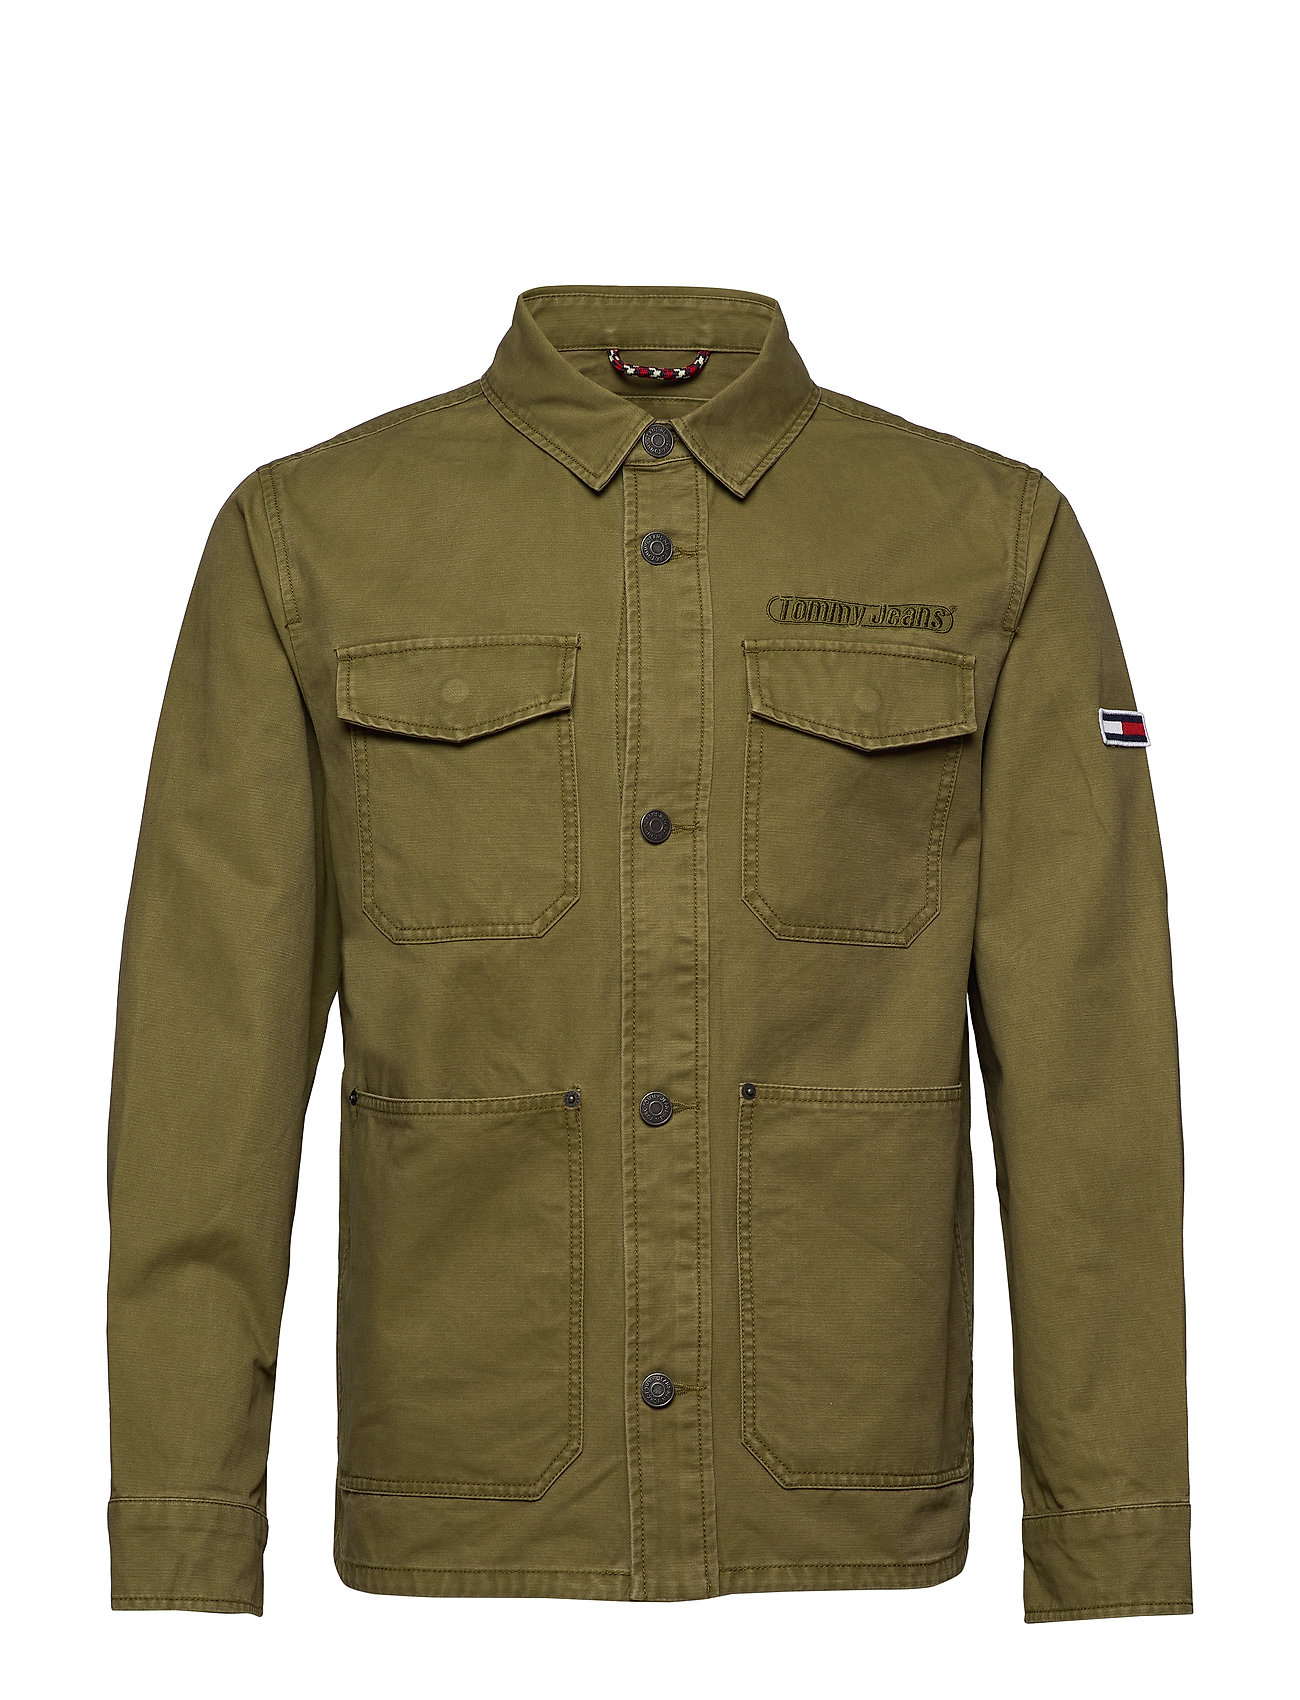 Seraph lineal vente Tommy Hilfiger denim jakker – Tjm Cotton Cargo Jacket Jakke Denimjakke Grøn  Tommy Jeans til herre i Uniform olive - Pashion.dk